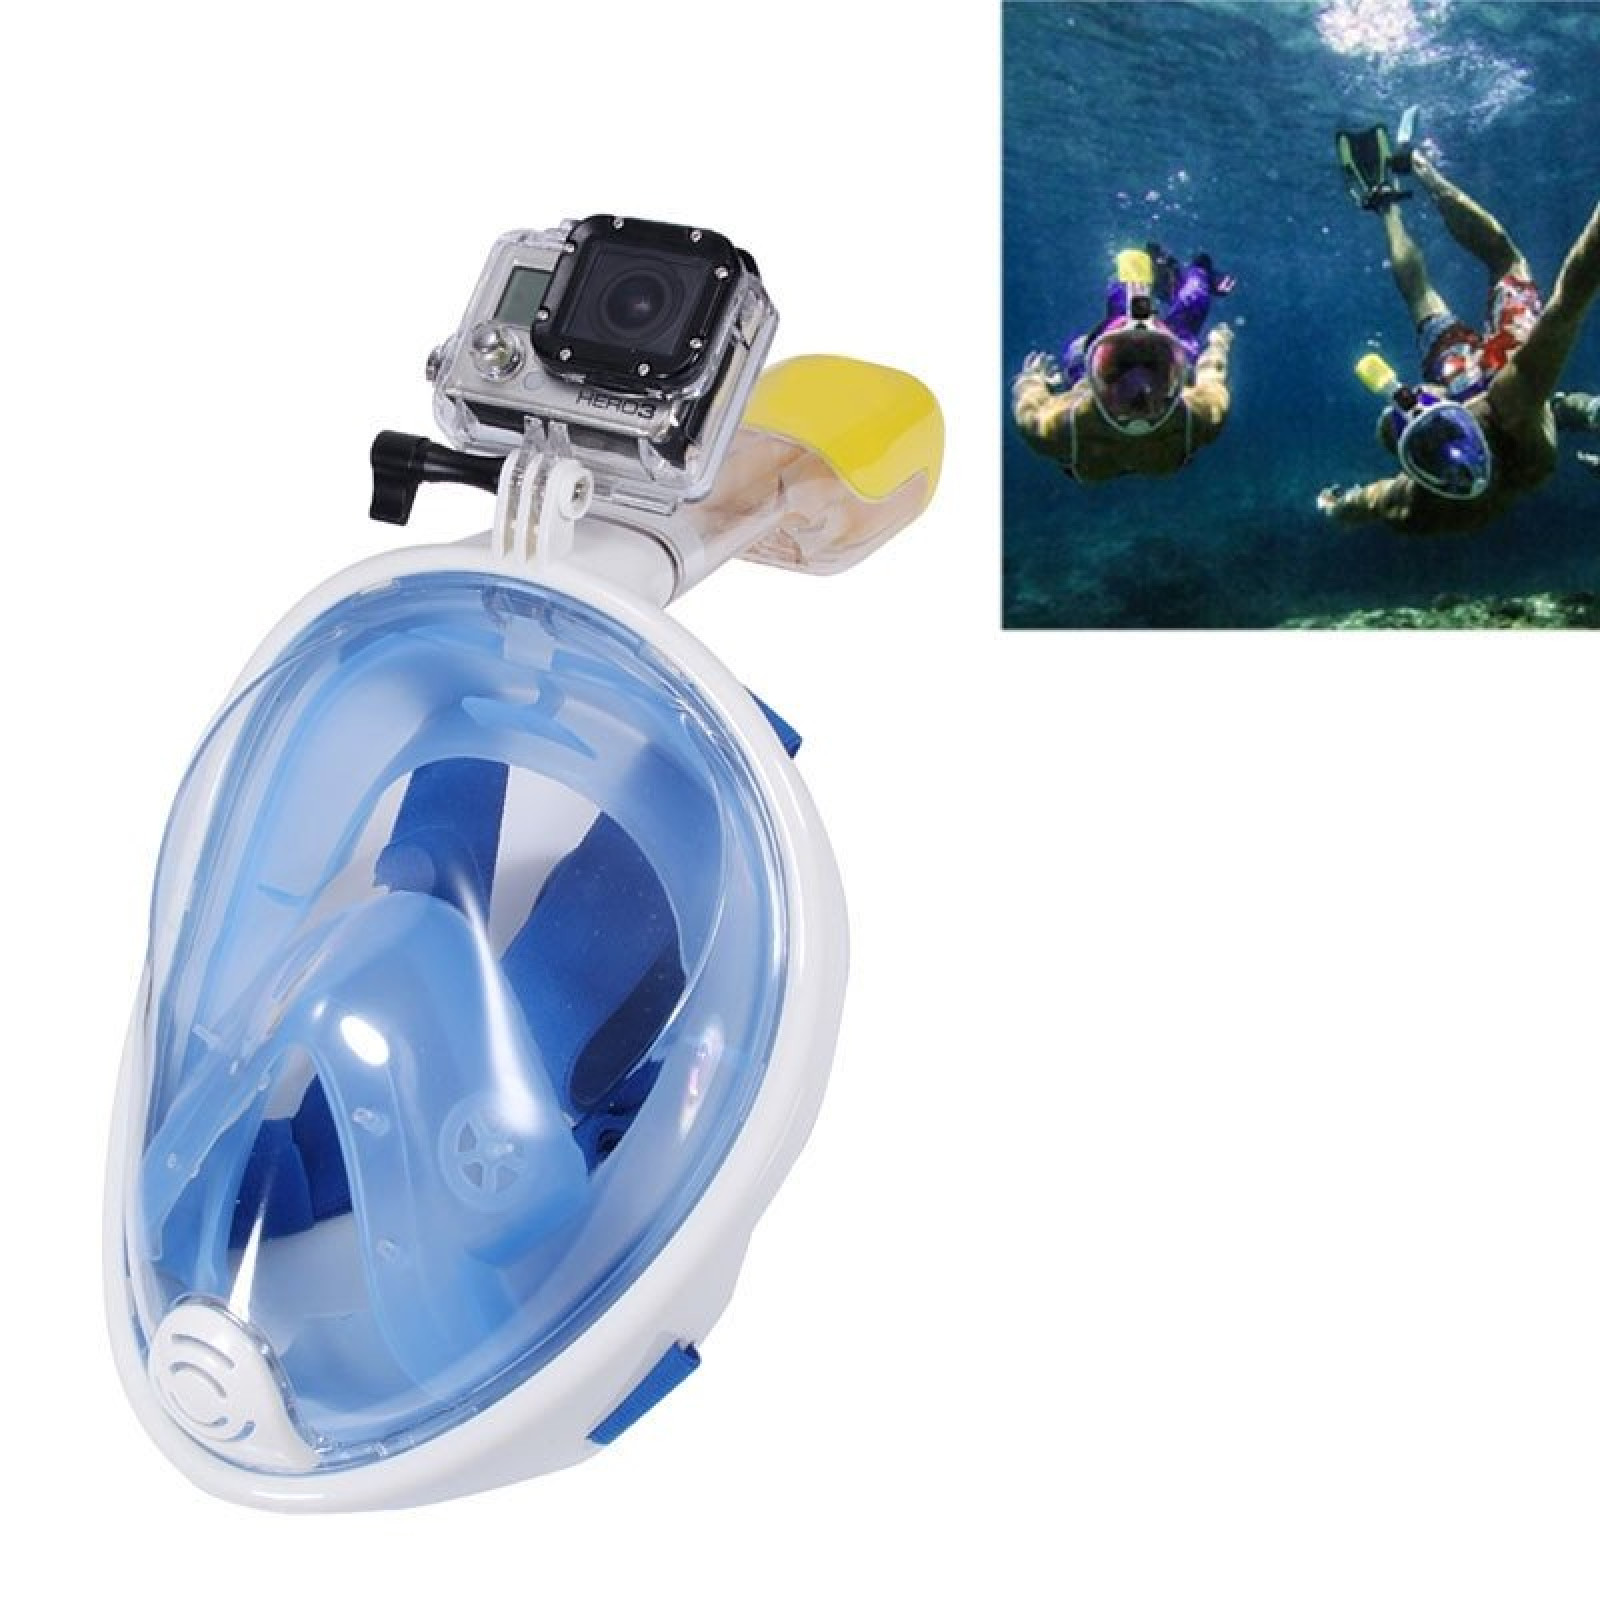 Маска для дайвинга снорклинга Free Easybreath для подводного плавания c креплением для камеры GoPro голубая S/M 148981